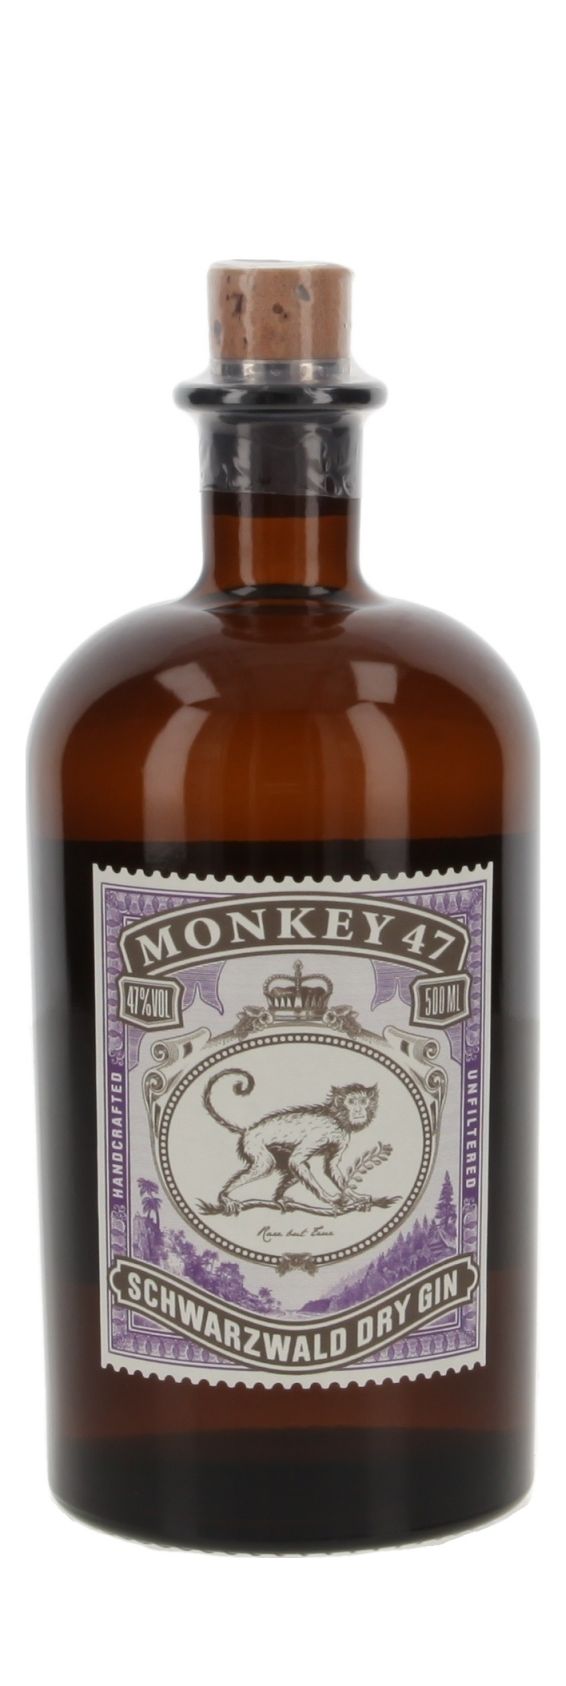 Online-Shop Dry Österreich 47 | » Zum Gin Whisky.de Monkey